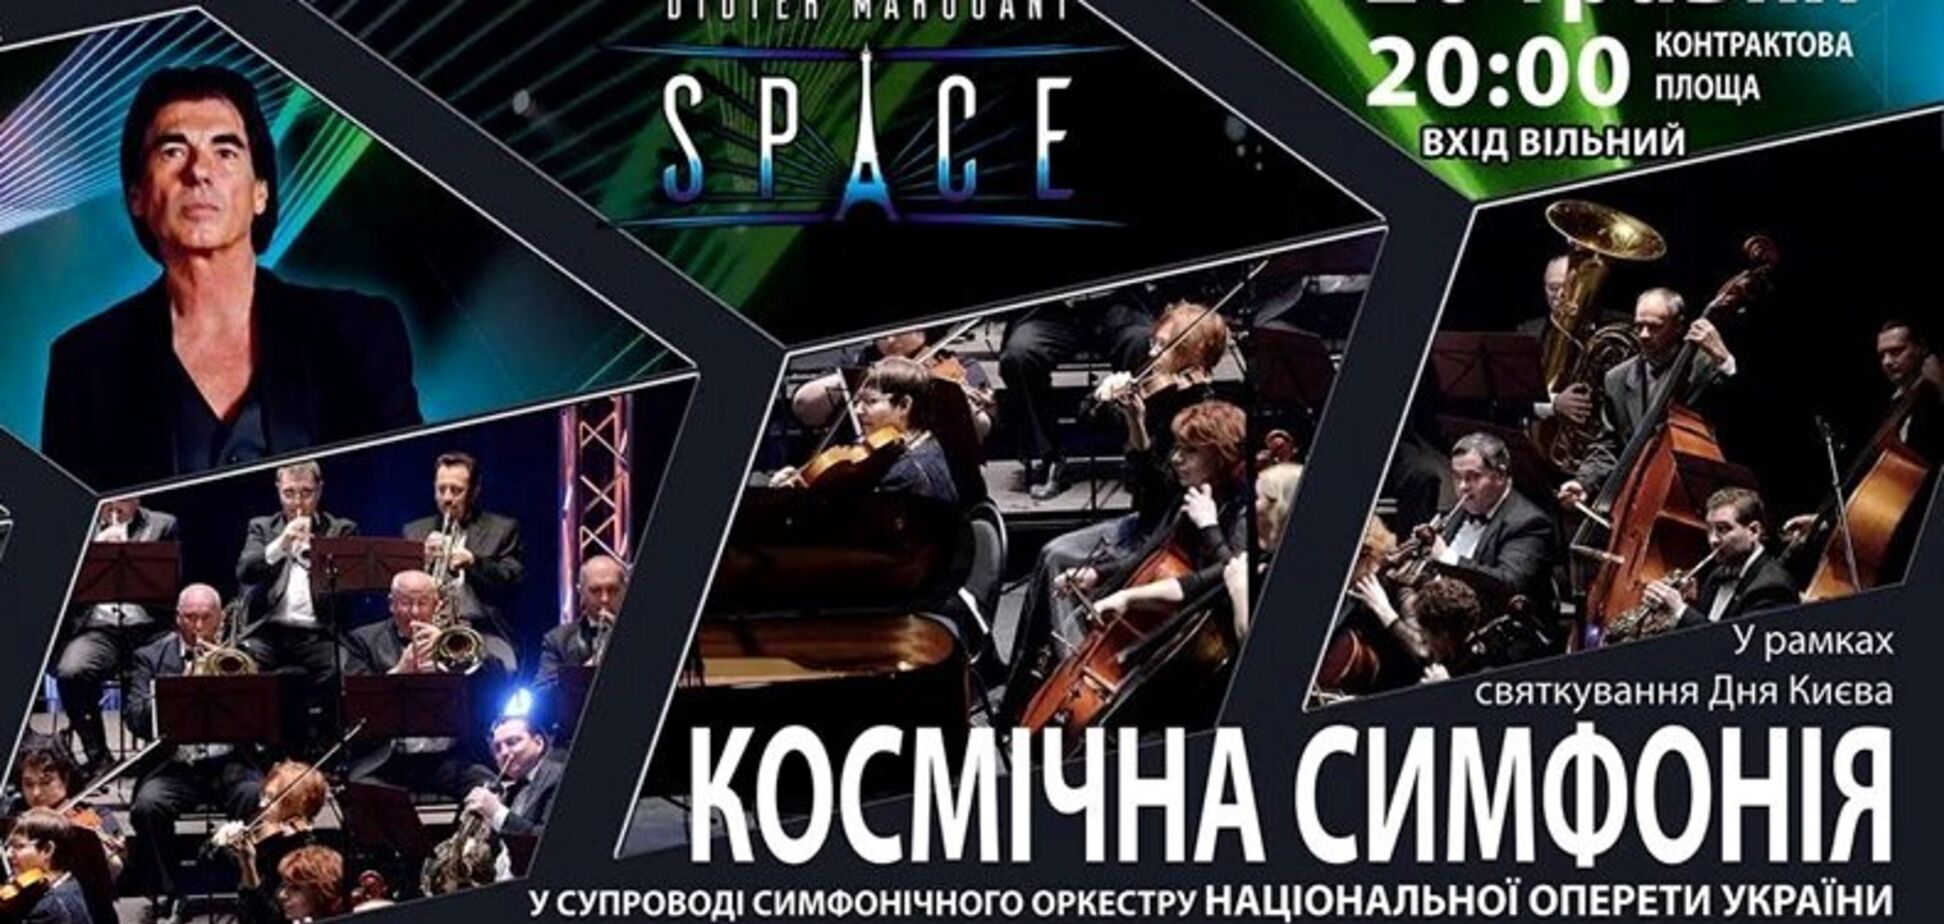 На Контрактовій площі в Києві відбудеться концерт 'Космічна симфонія'